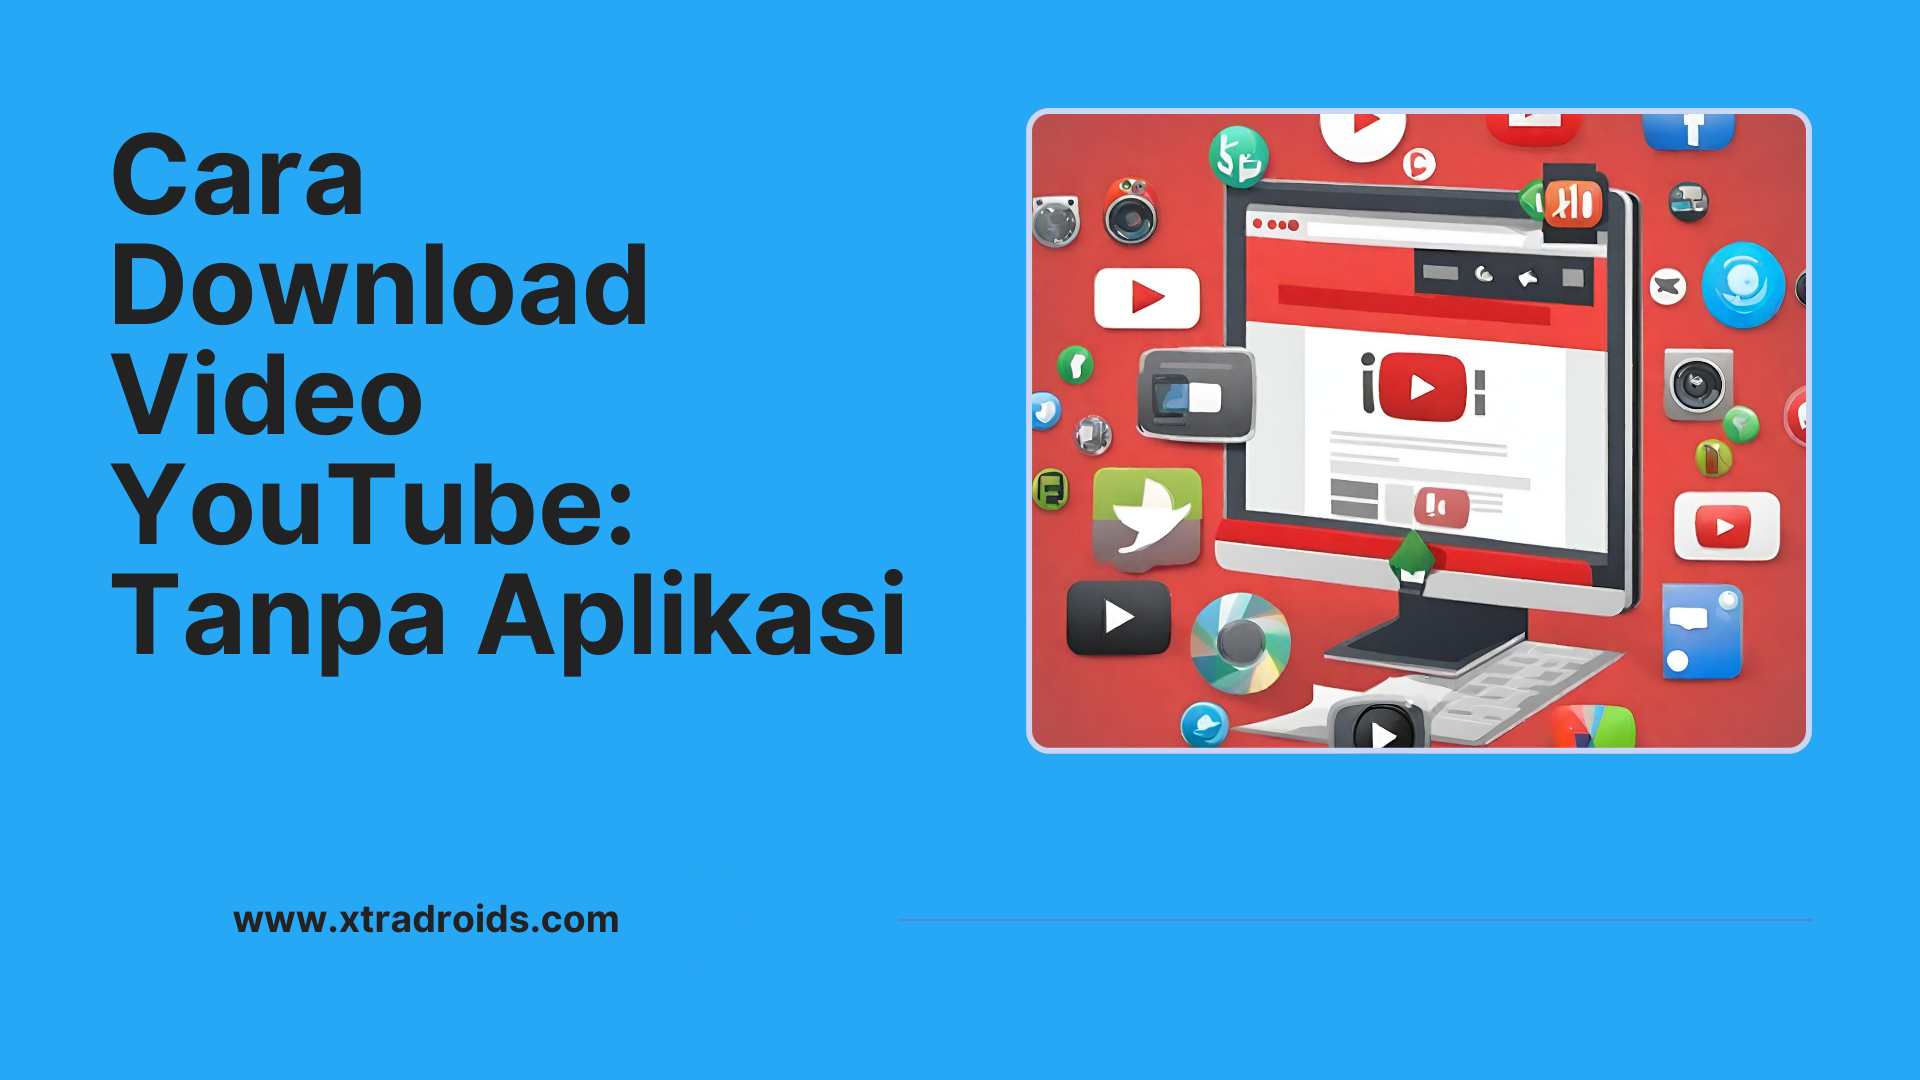 Cara Download Video YouTube: Tanpa Aplikasi